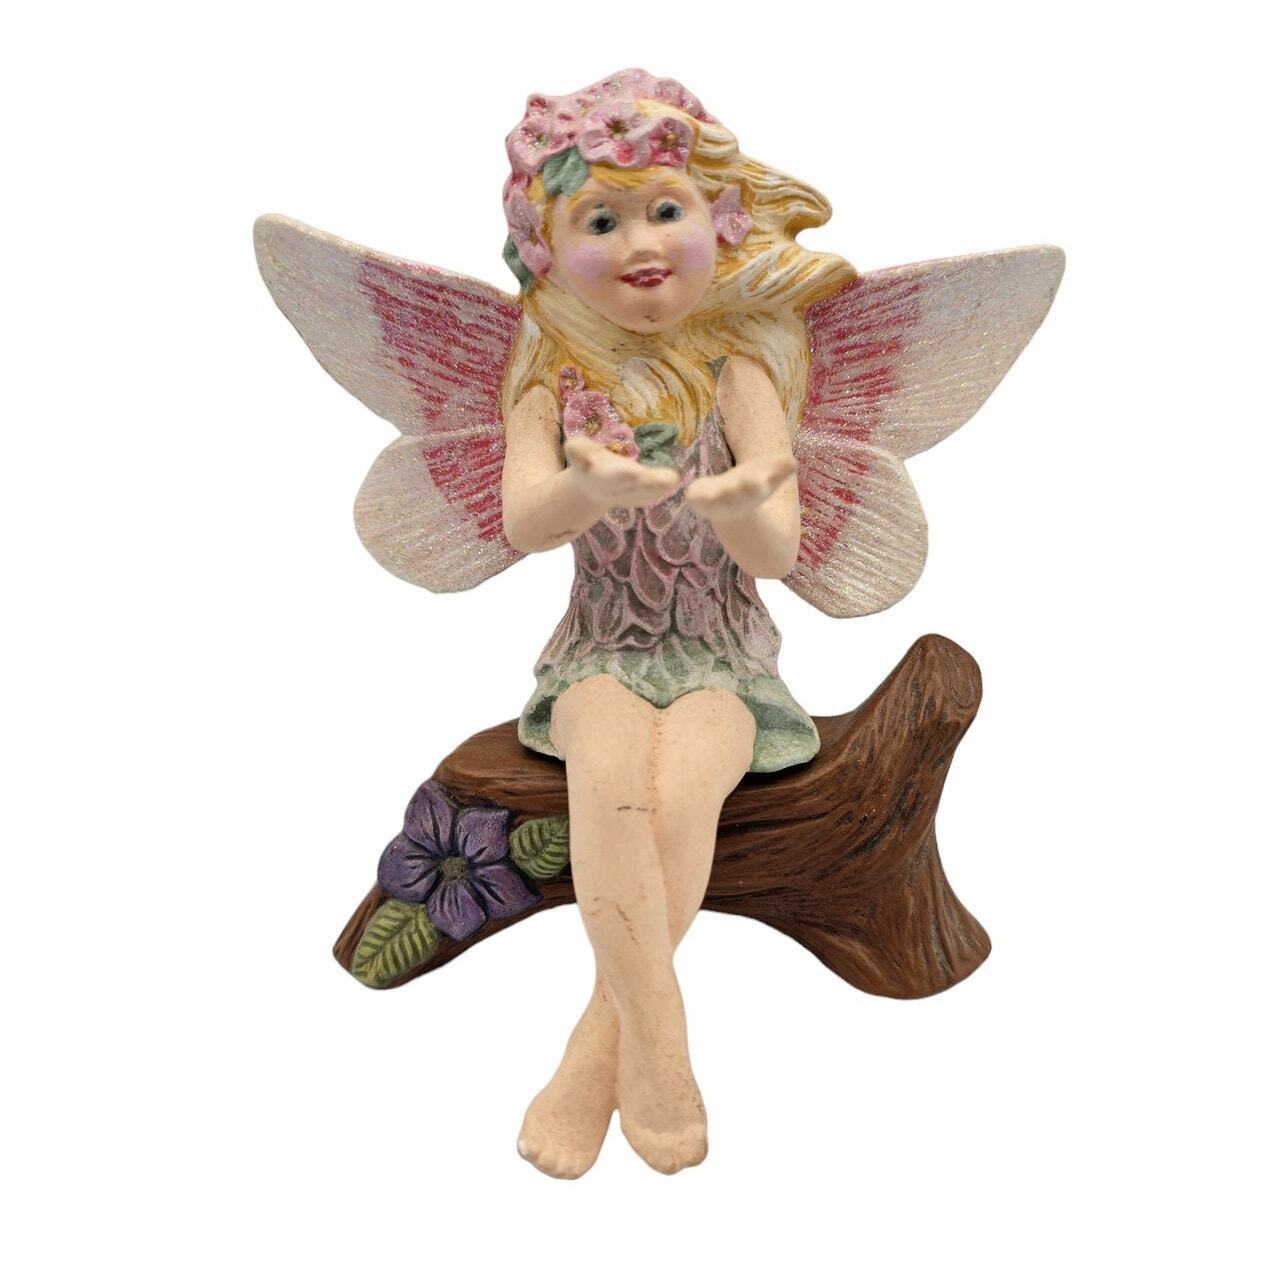 Vintage 1990s Fairy Princess Ceramic Figurine Sitting On Log Hand Painted